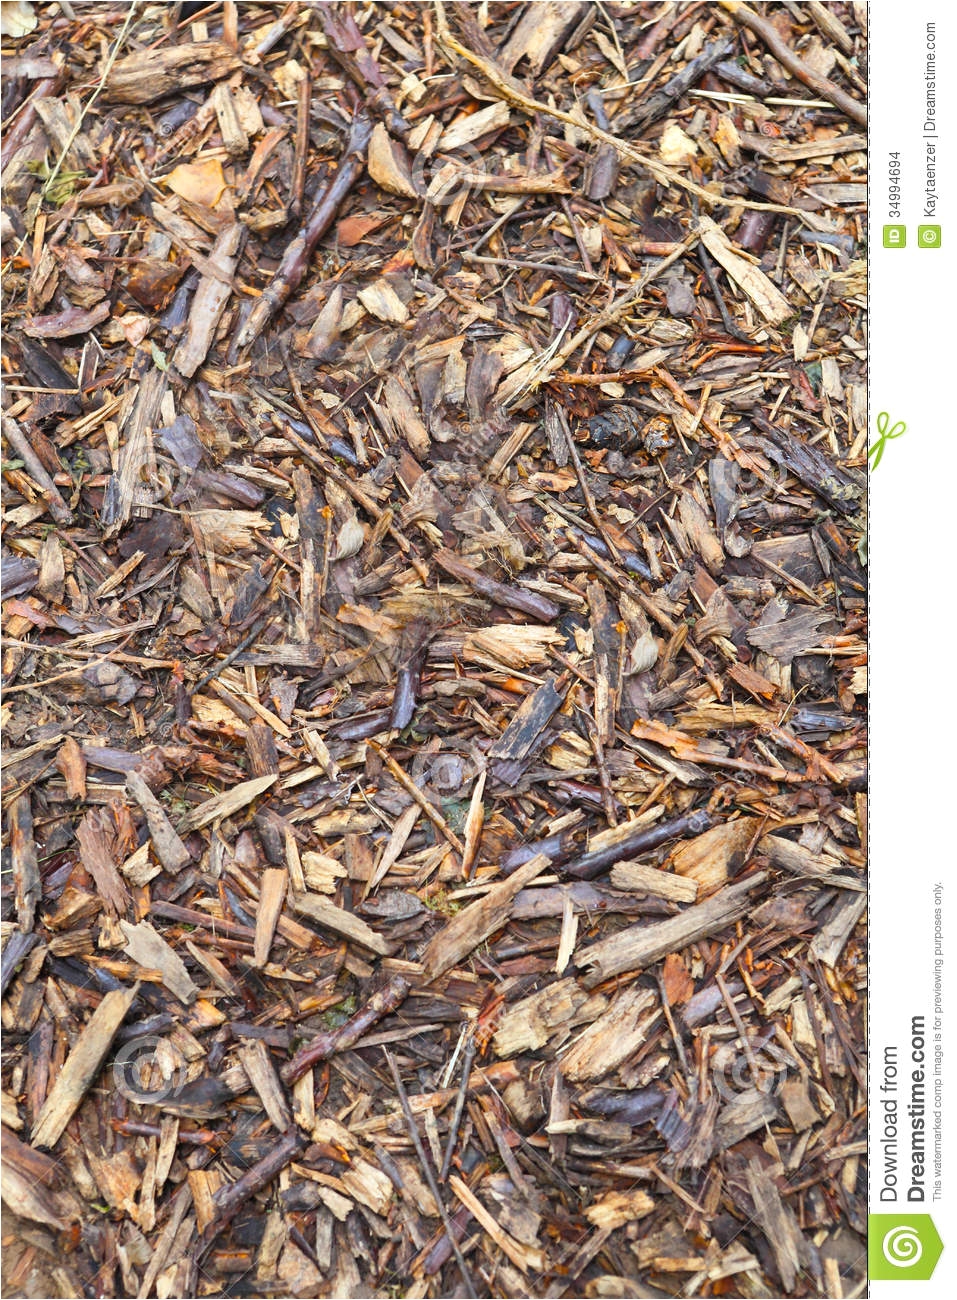 bark mulch forest floor garden path